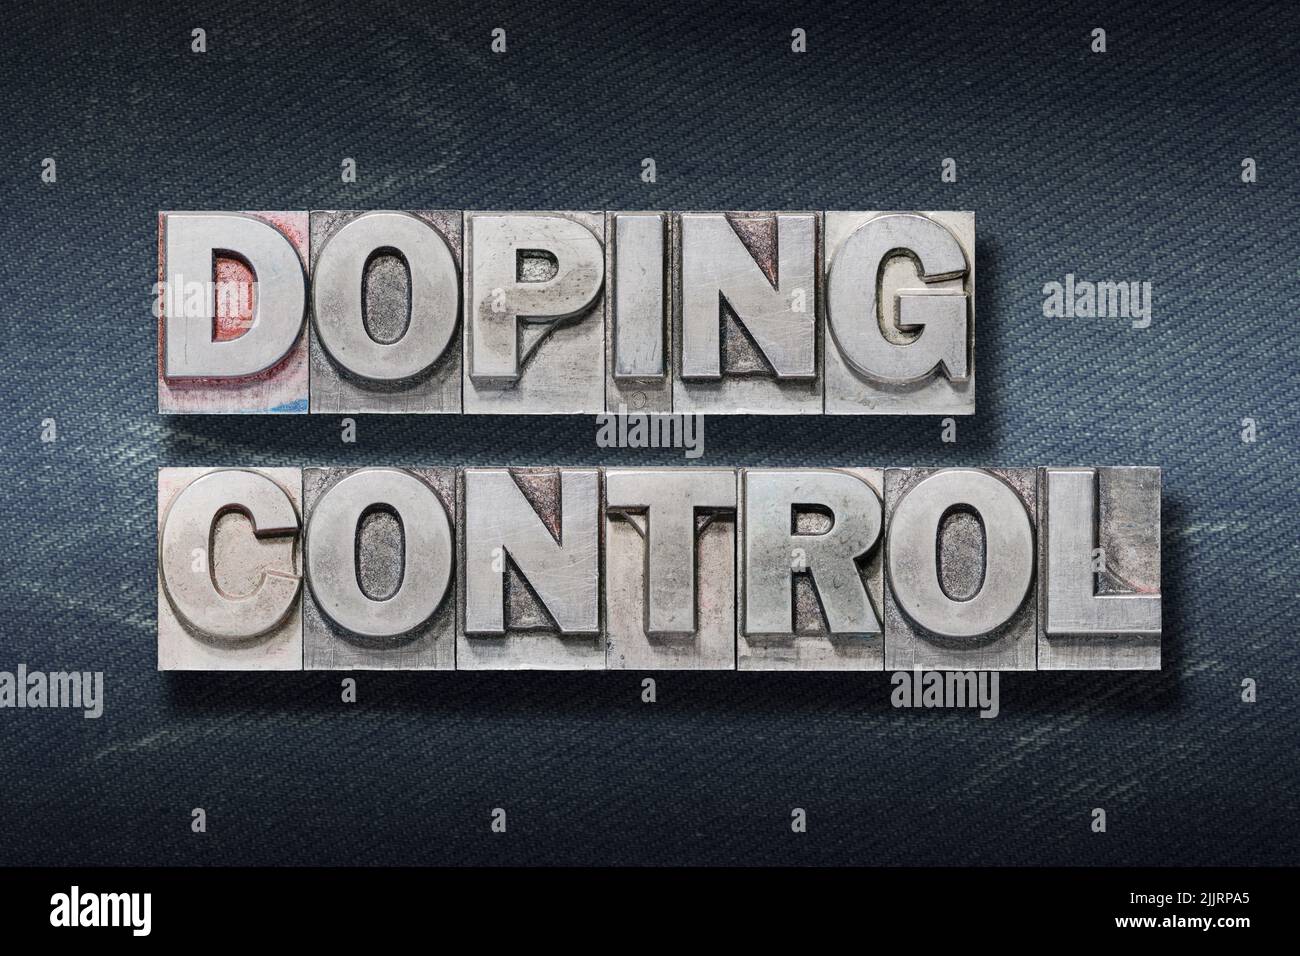 Doping Control Phrase aus Metallic-Buchdruck auf dunklem Jeans-Hintergrund Stockfoto